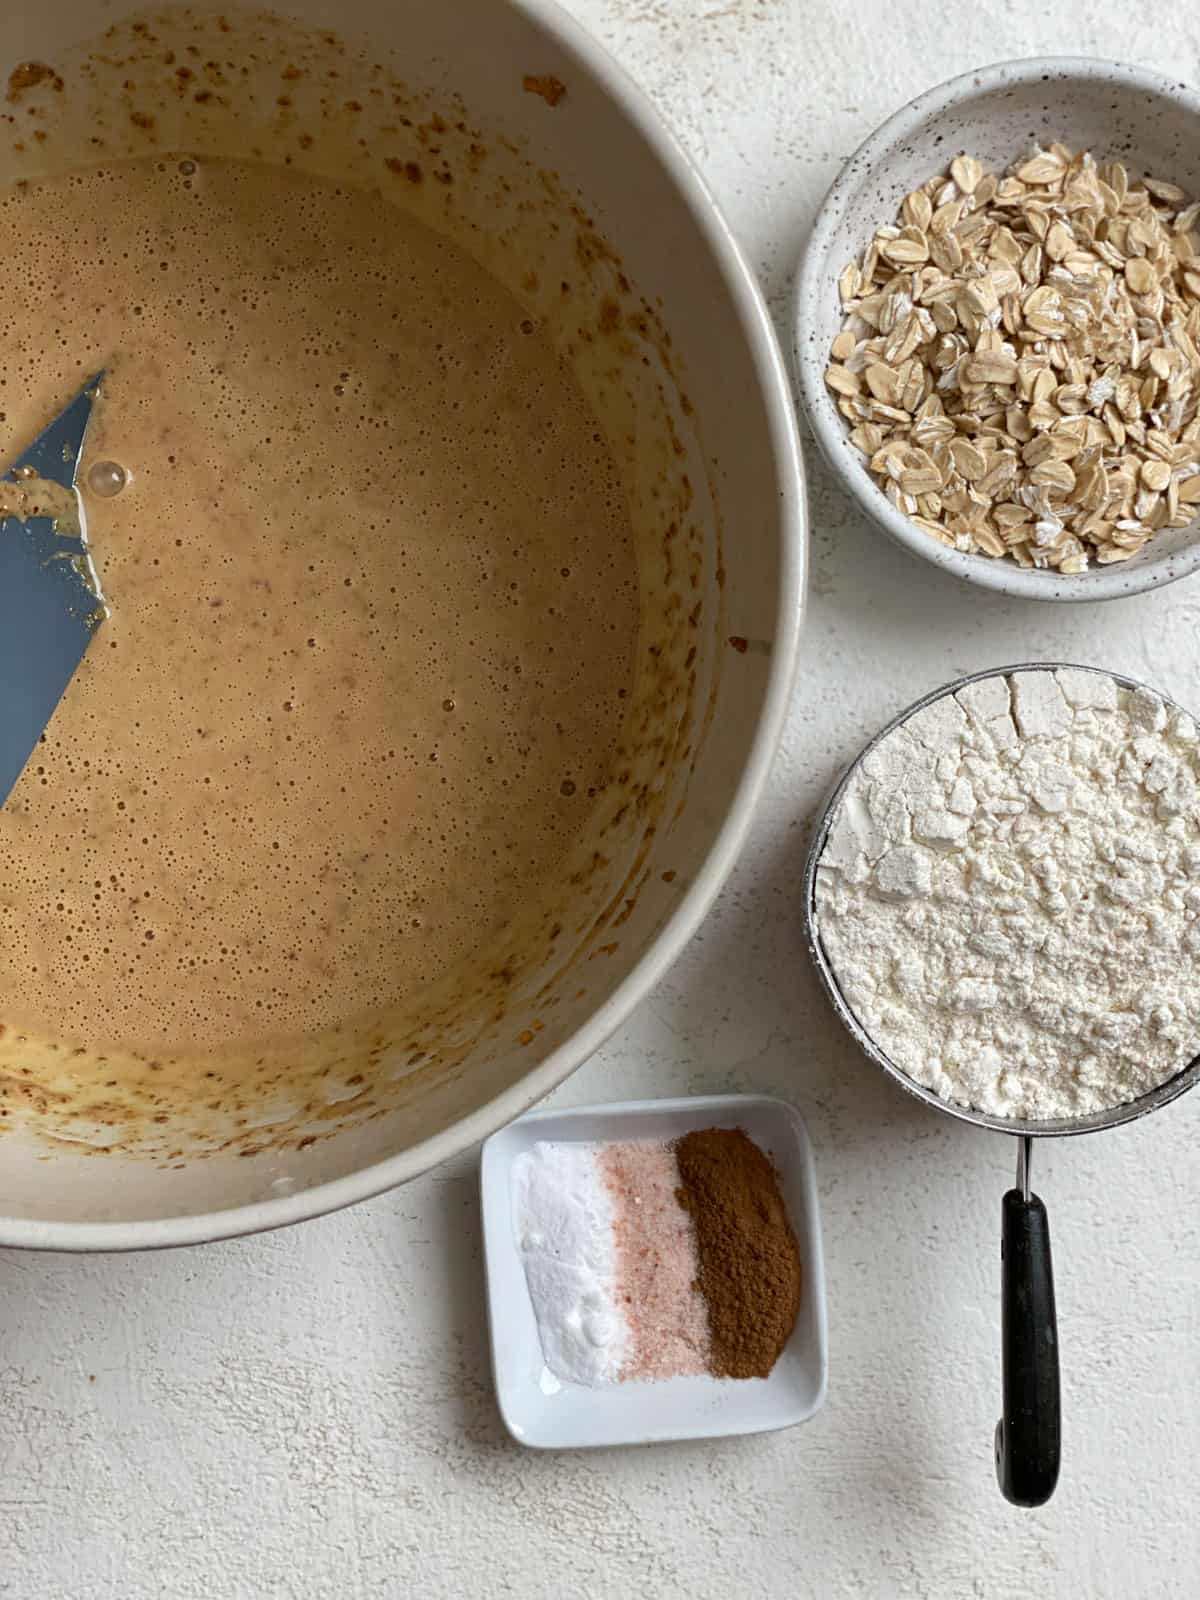 bowl of peanut ،er mixture alongside additional ingredients